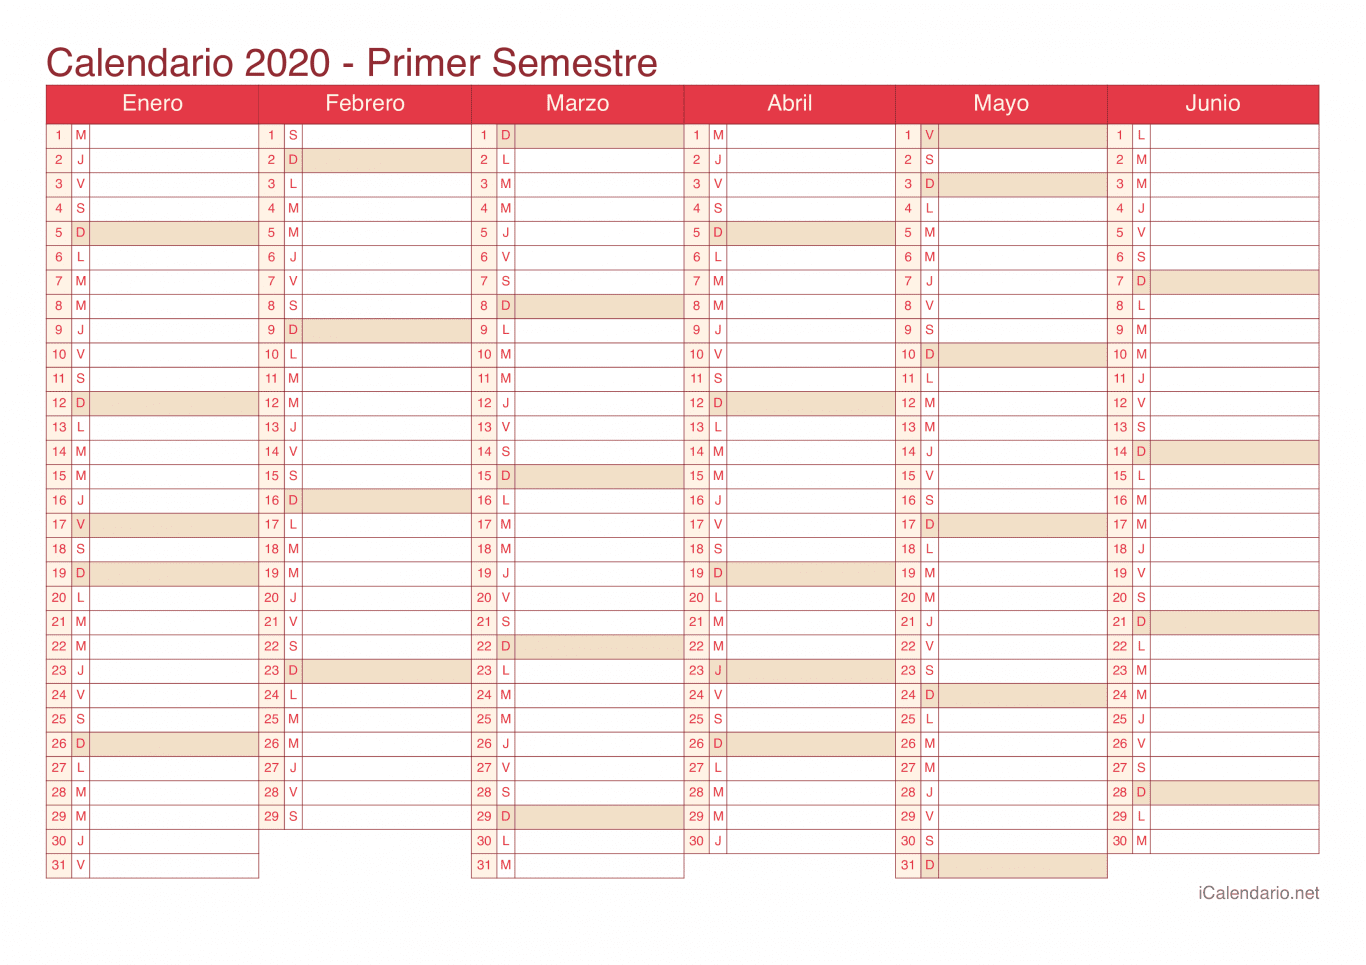 Calendario por semestre 2020 - Cherry